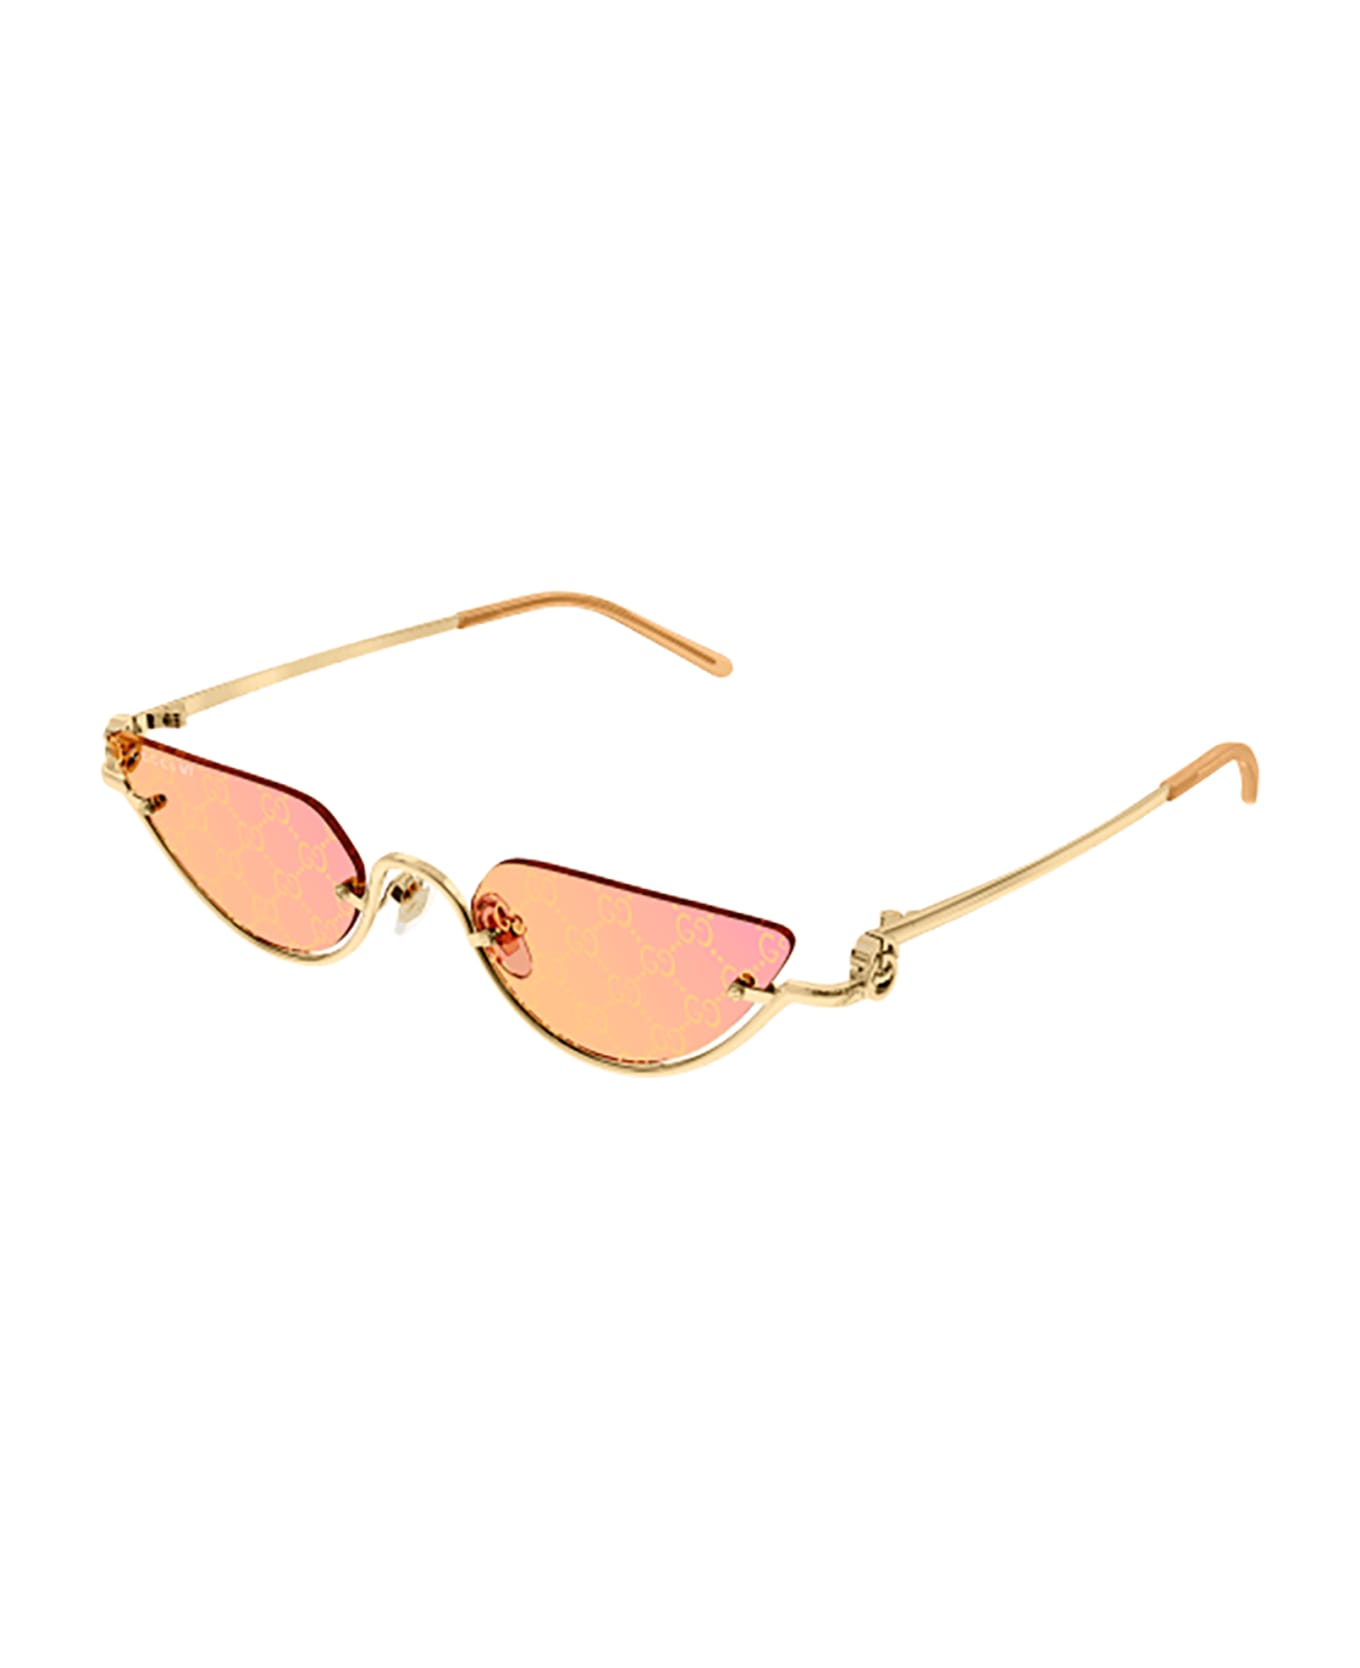 Gucci Eyewear GG1603S Sunglasses - Gold Gold Yellow